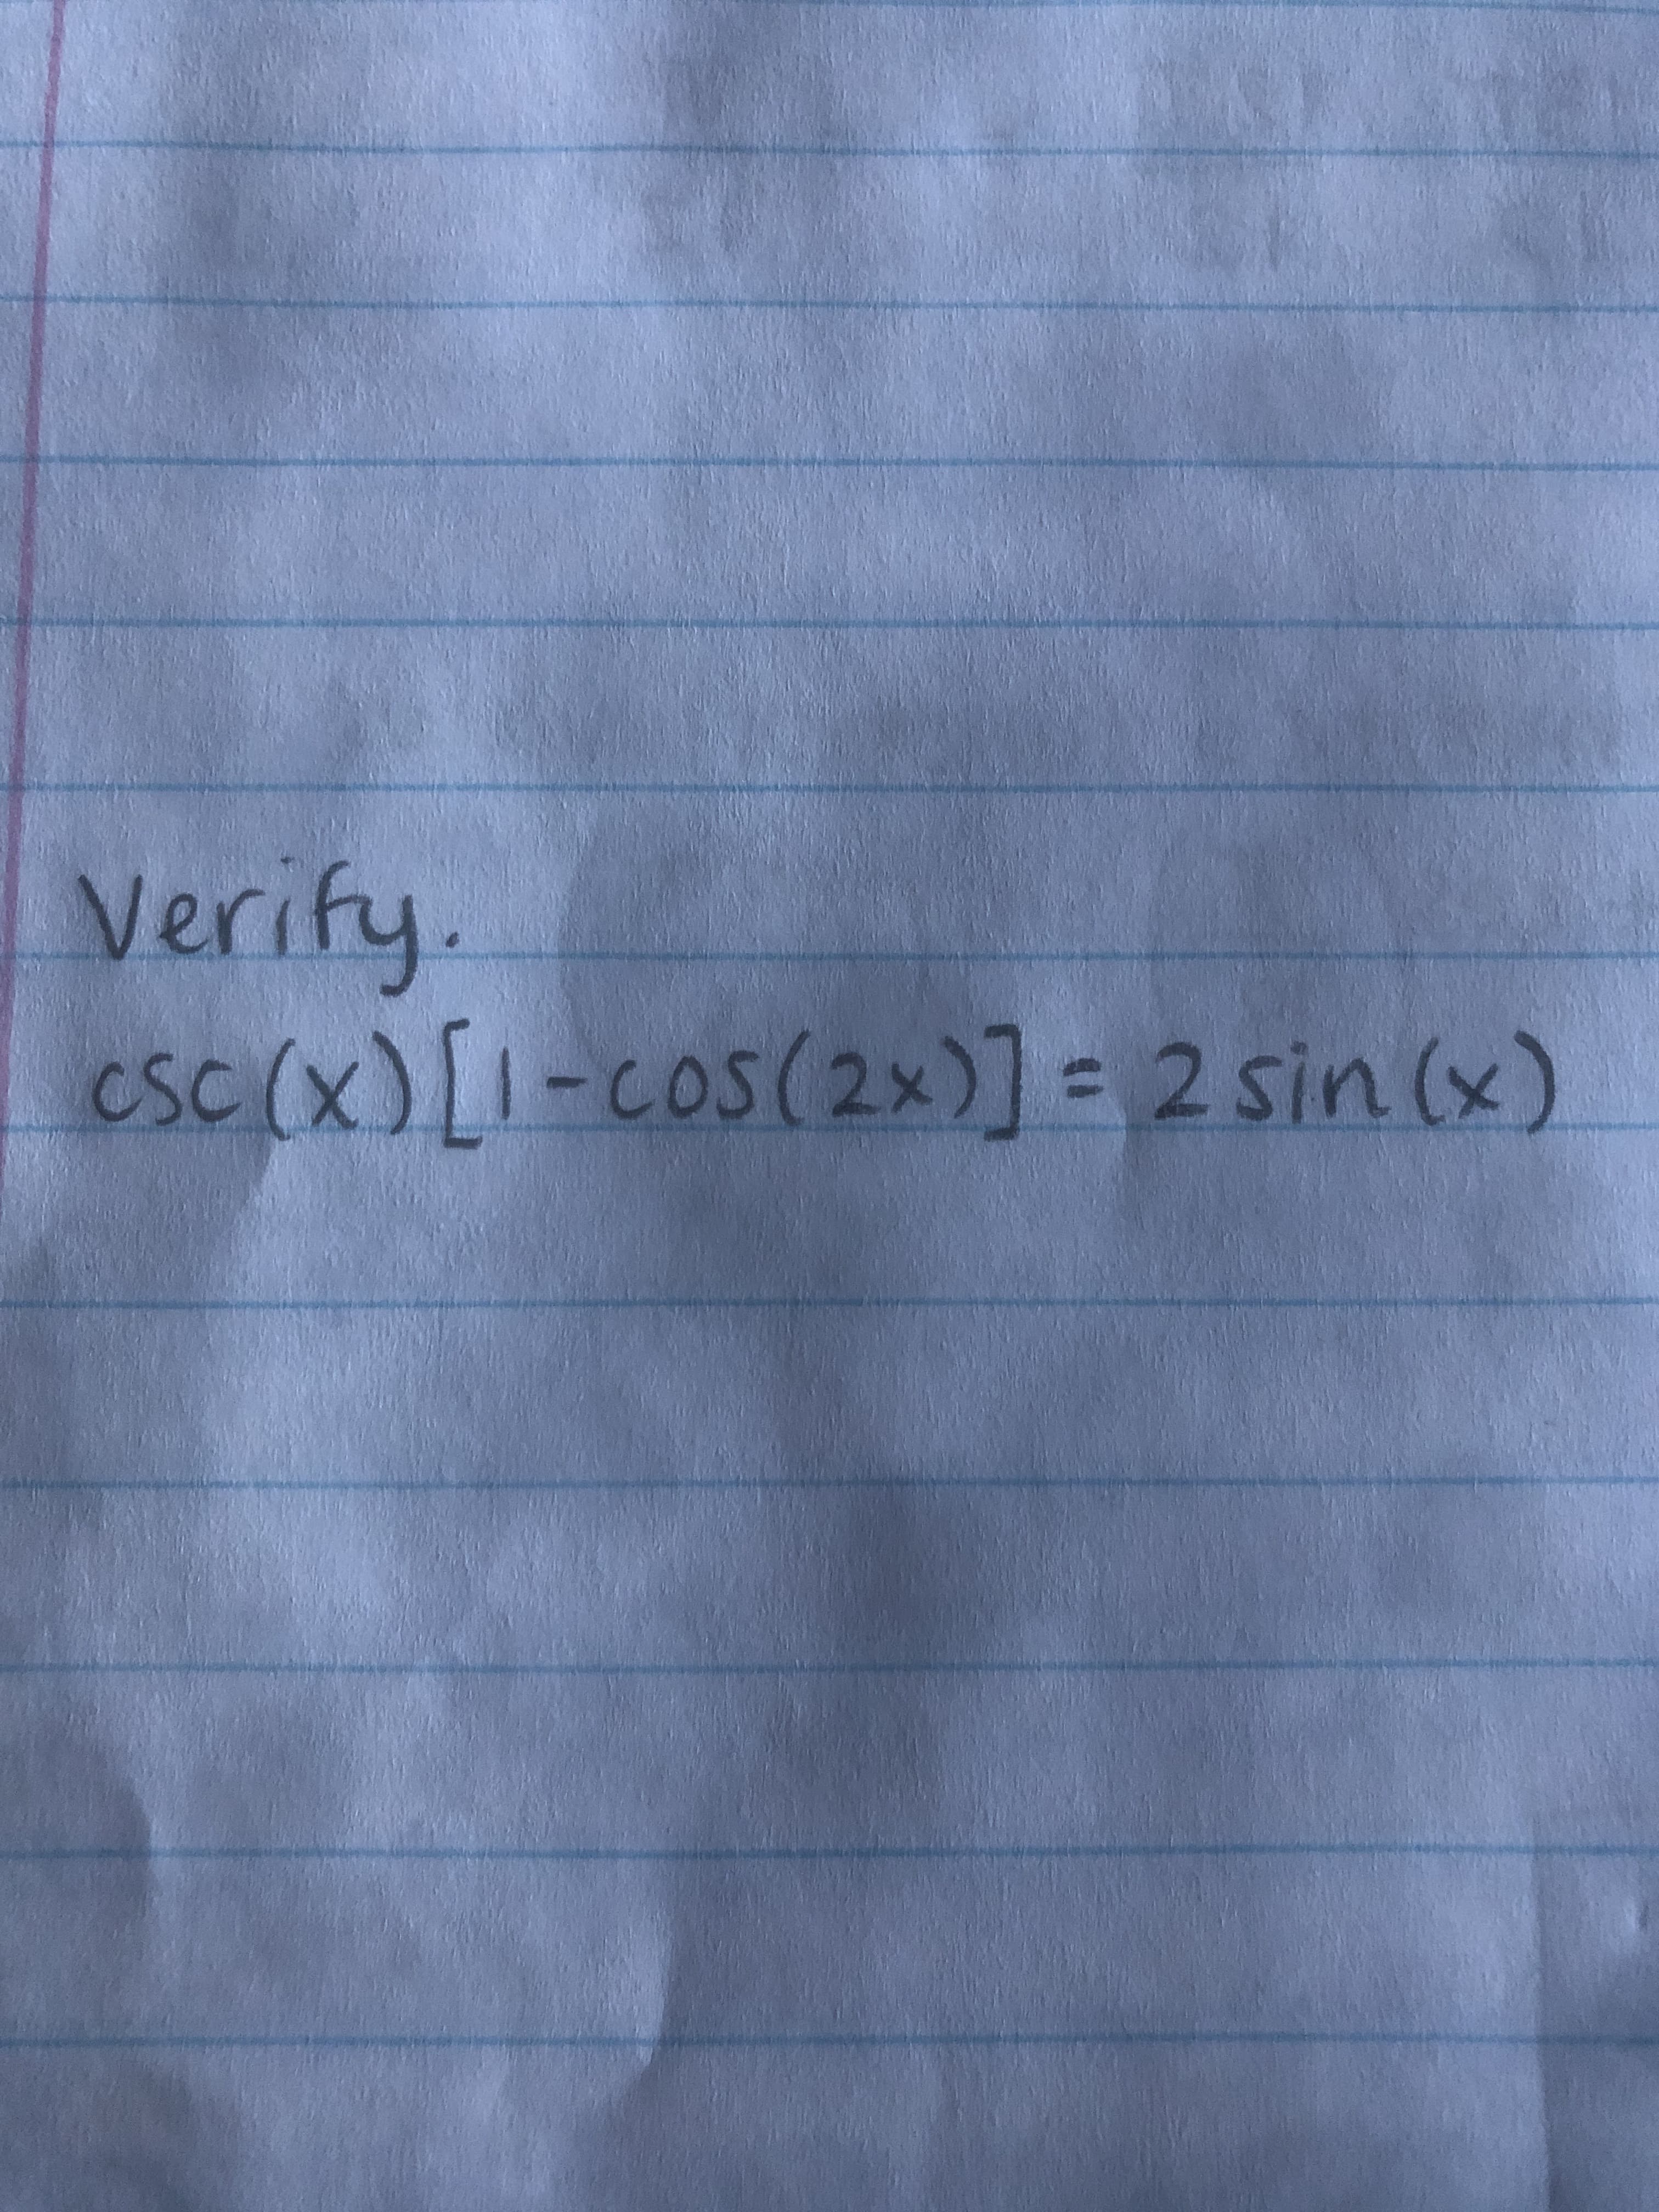 Verify.
esc (x) [I-cos(2x)] = 2 sin (x)
SC
